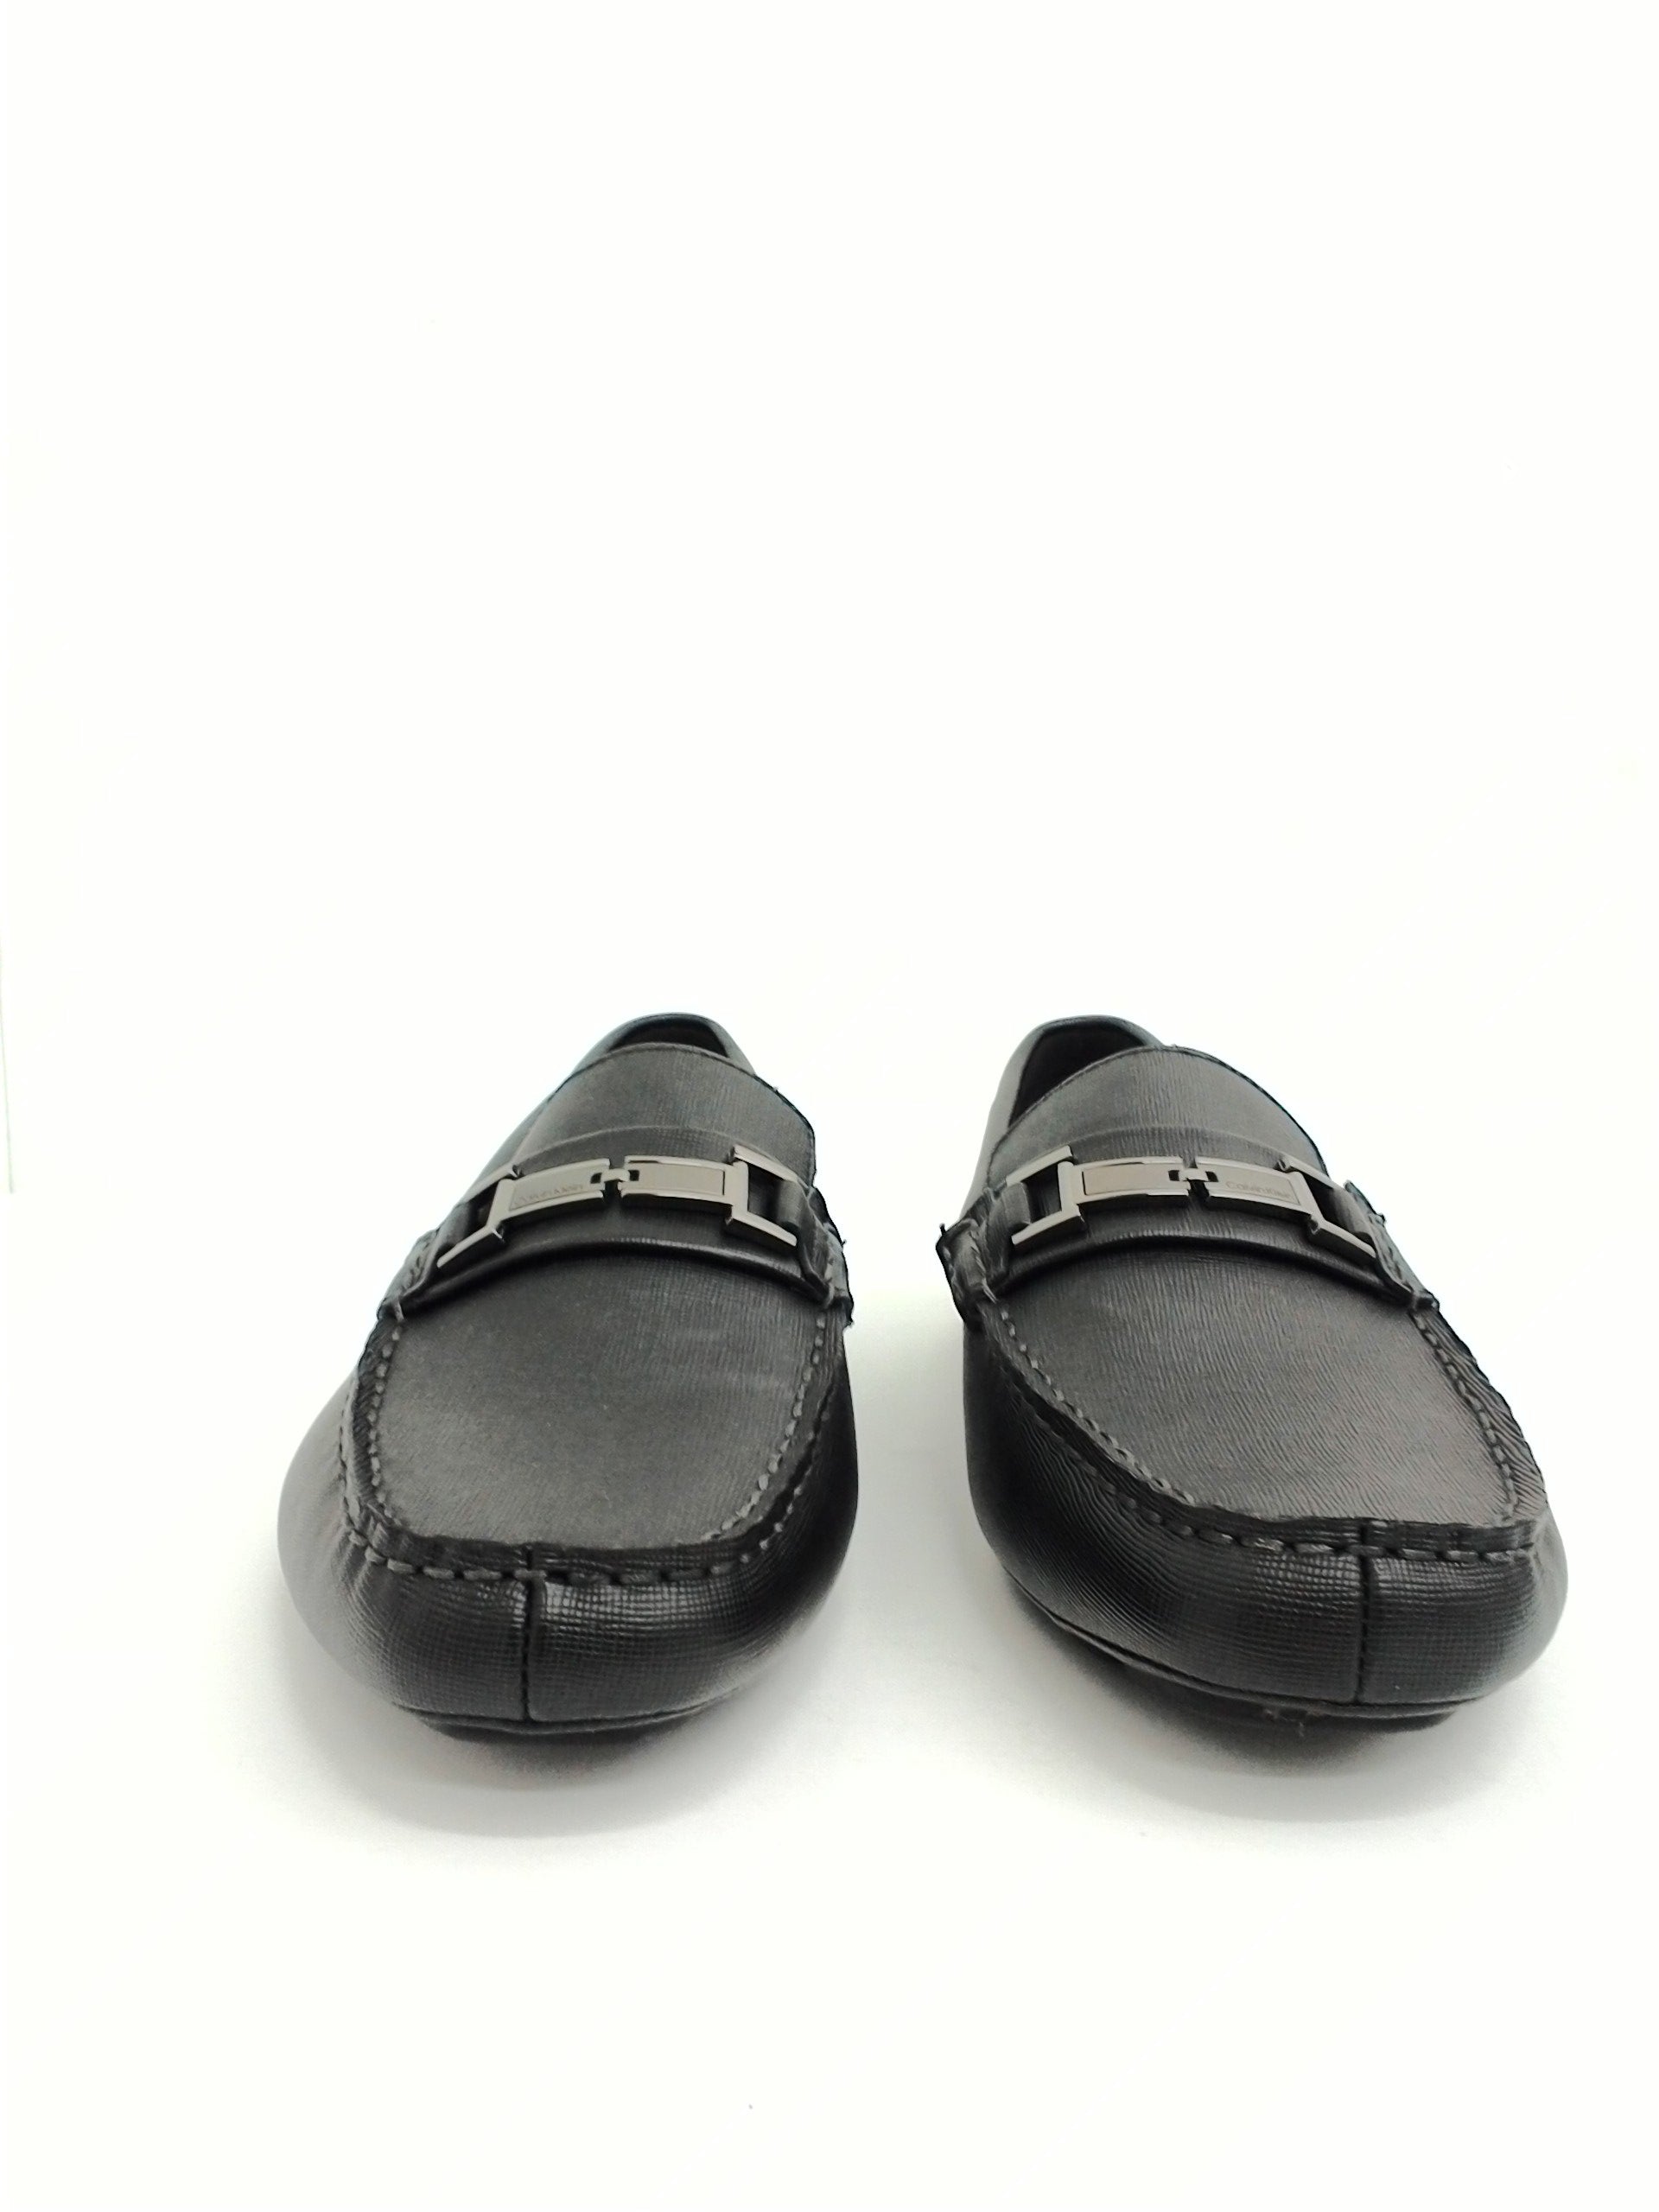 Calvin Klein Men's Magnus Weave Emboos, Black Loafer, Size 10.5 M ...